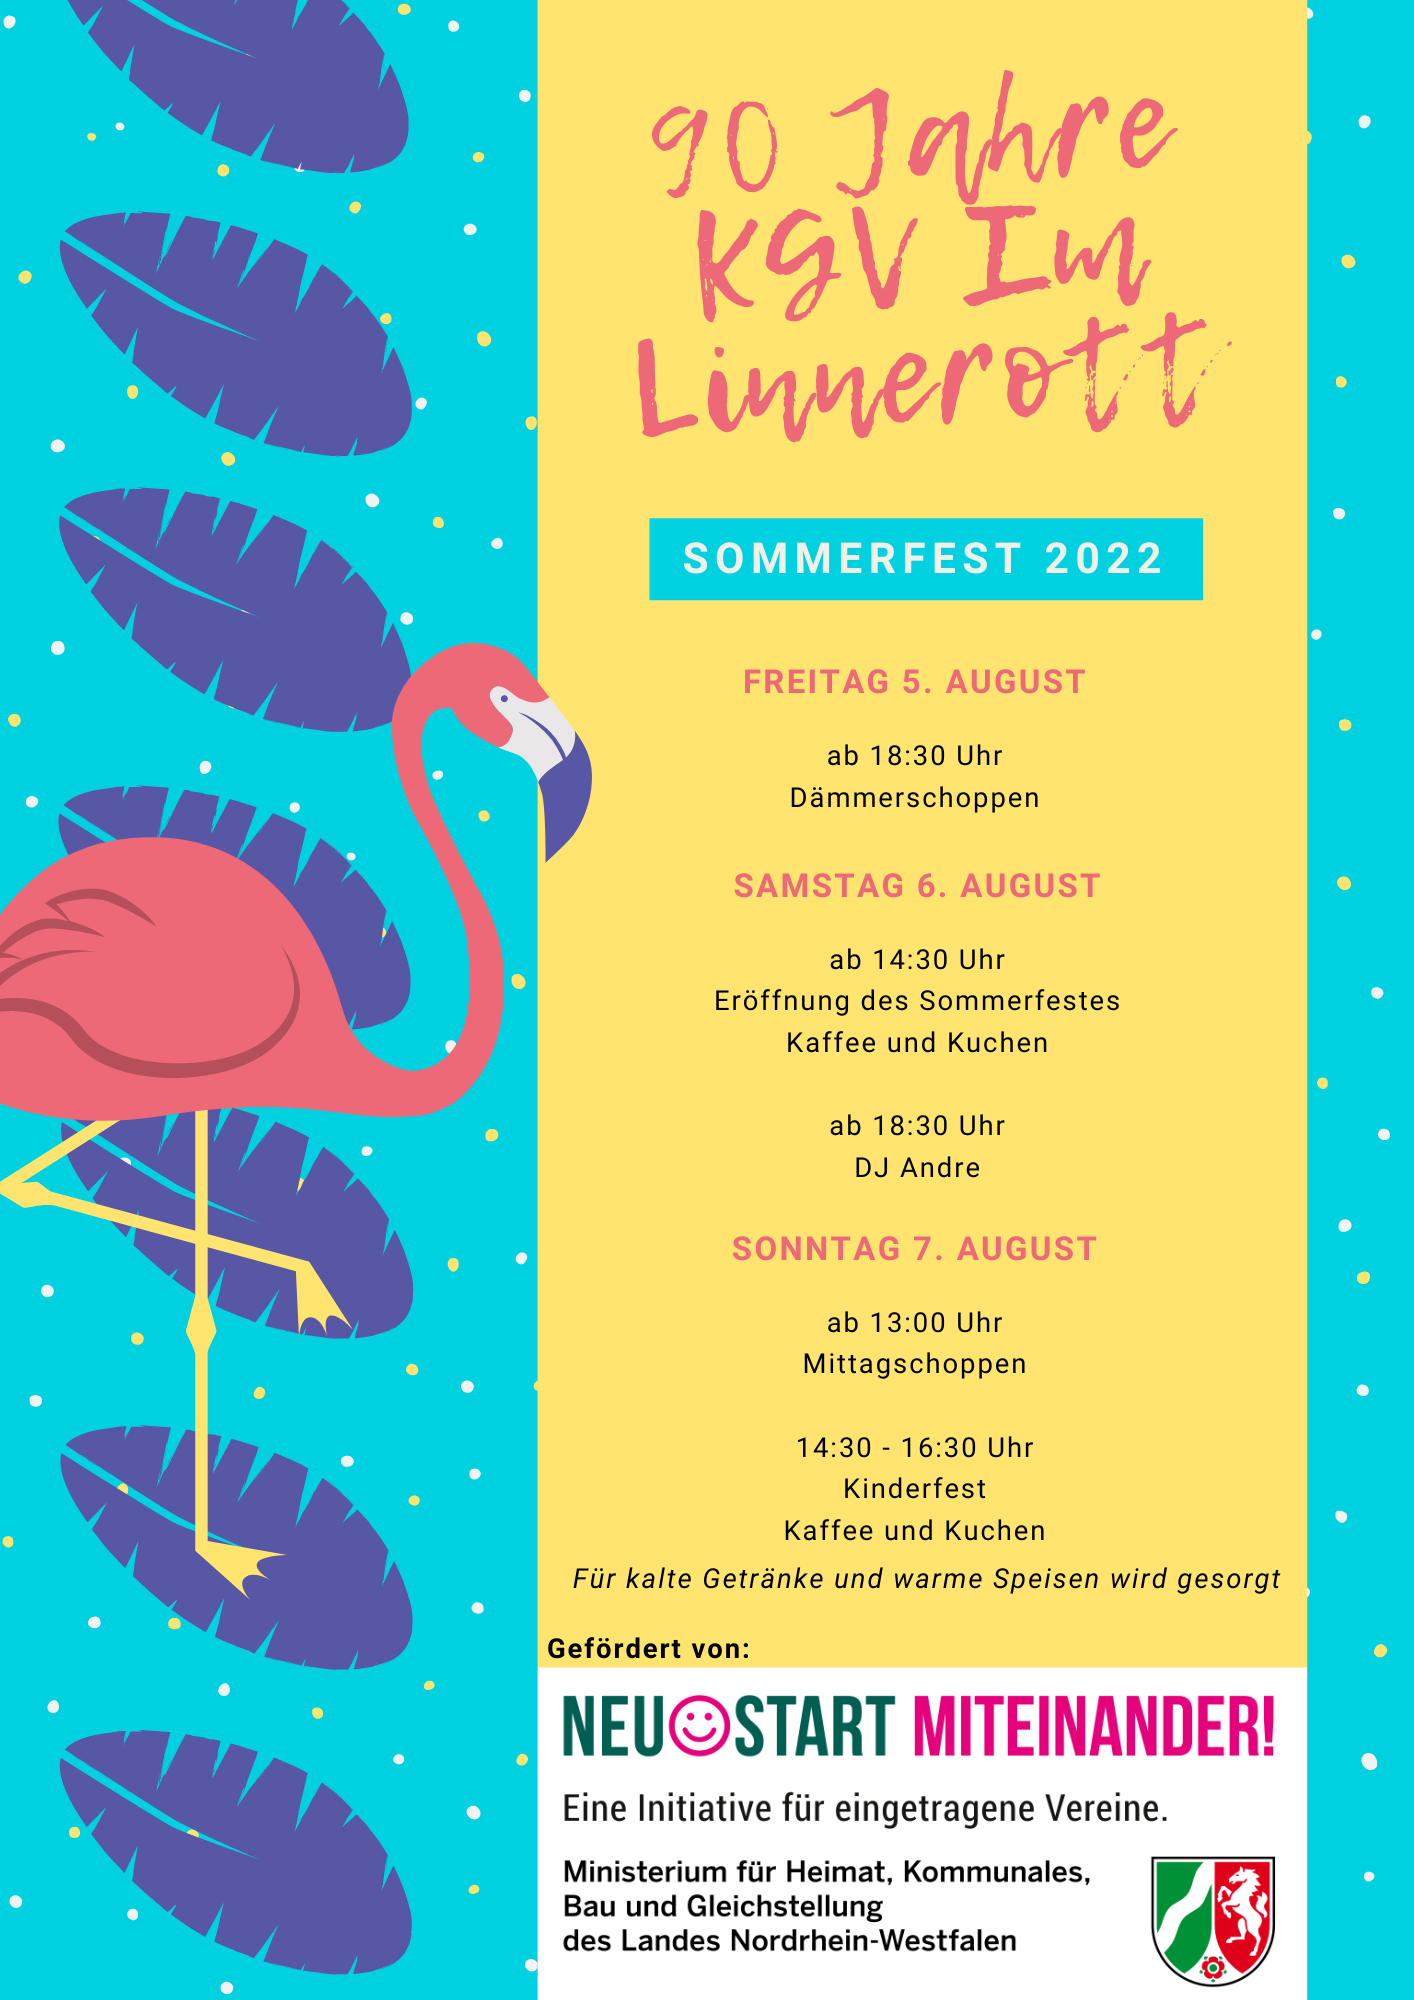 Flyer Sommerfest 2022 KGV Im Linnerott 90 Jahre